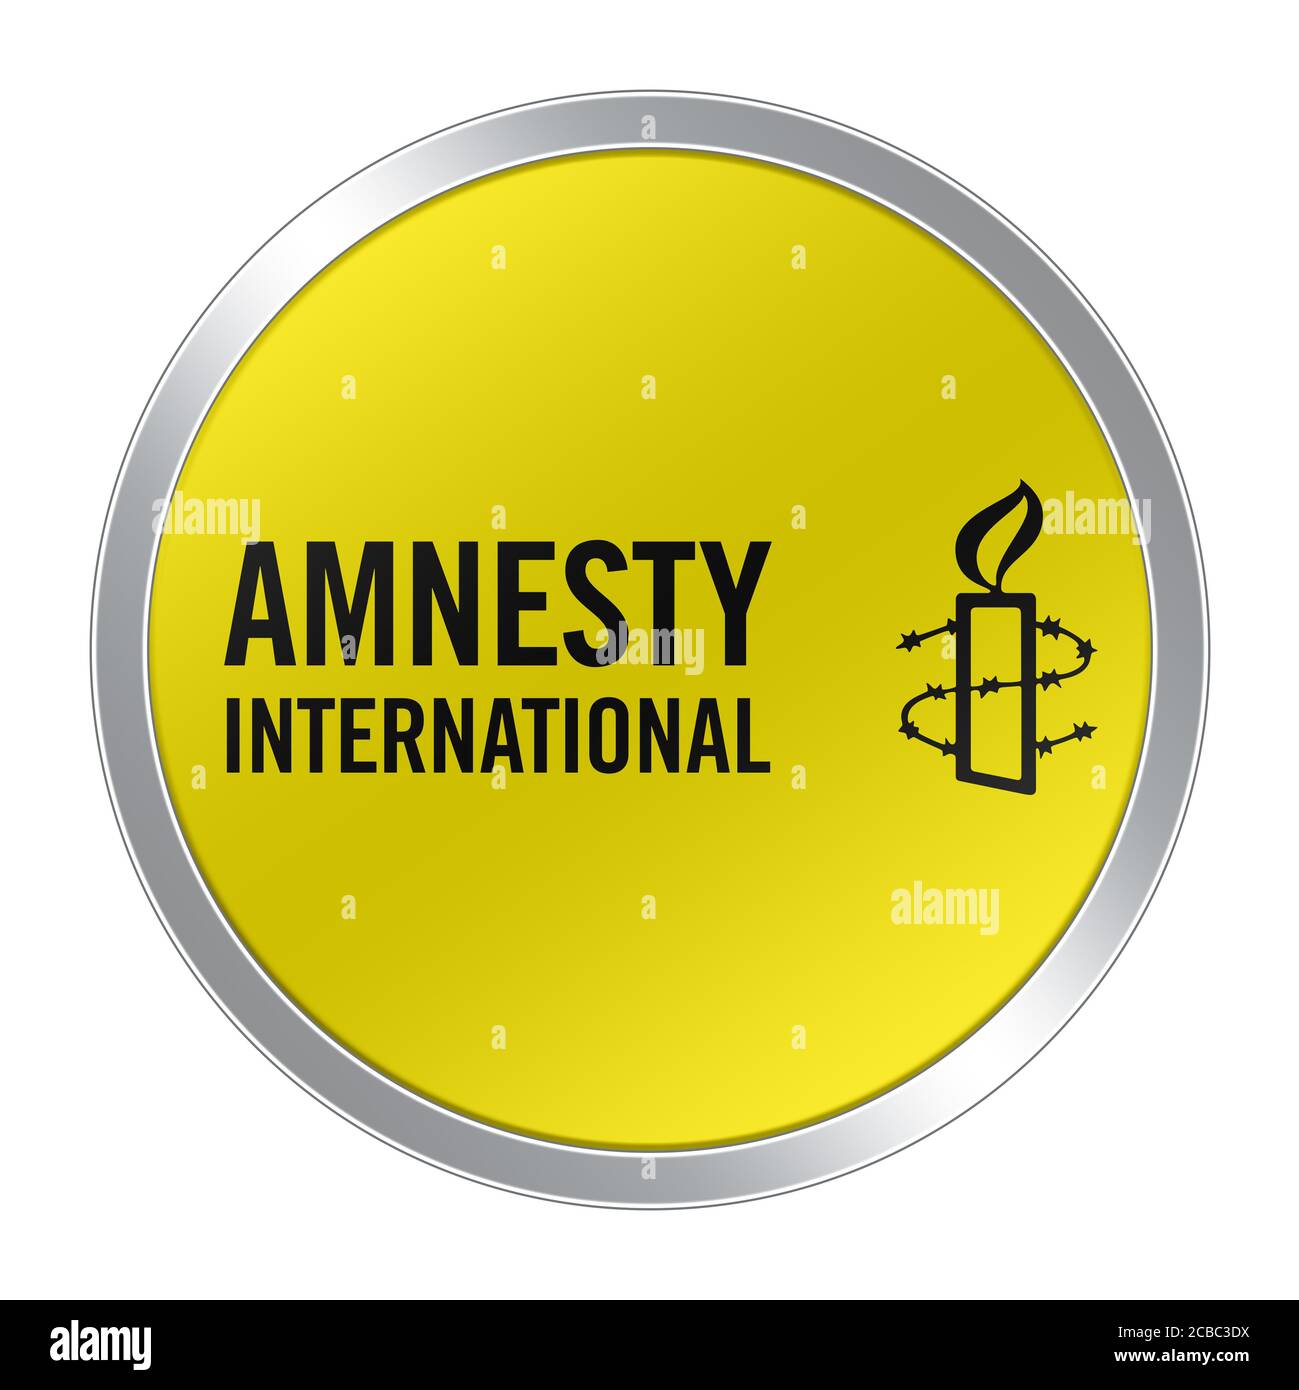 Amnesty International logo symbol Stock Photo